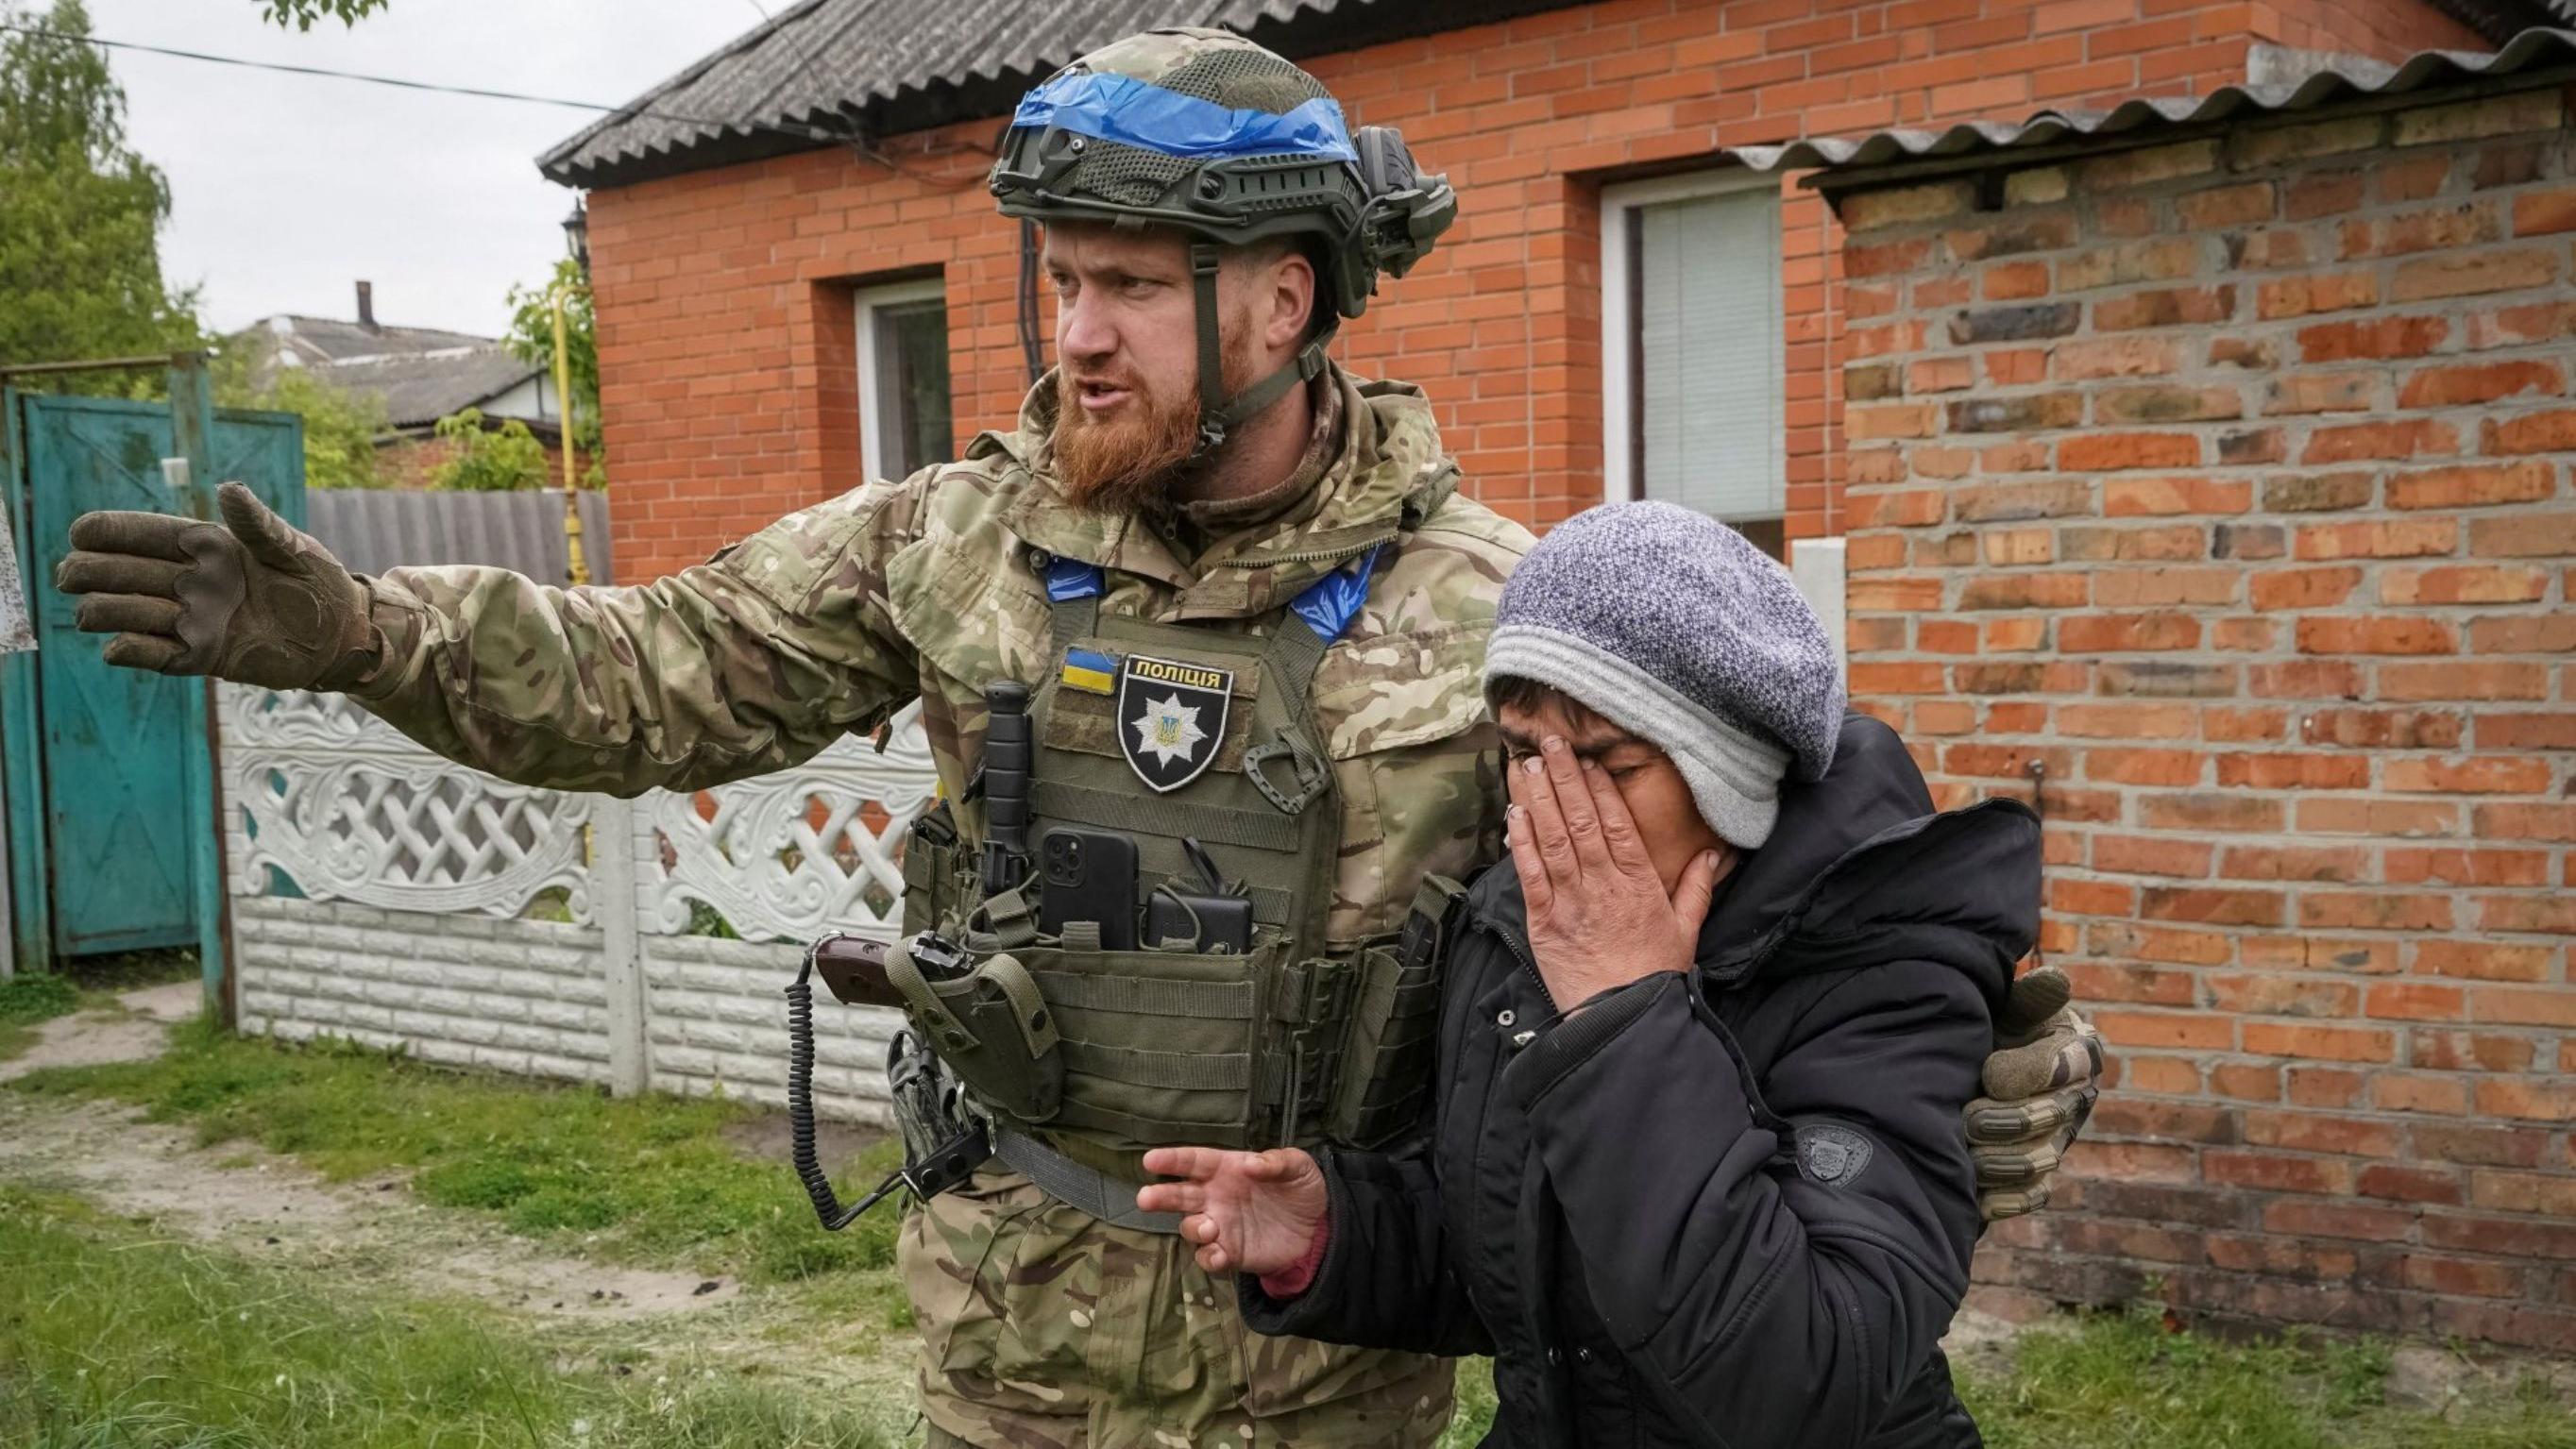 Blinken visits during moment of peril for Ukraine